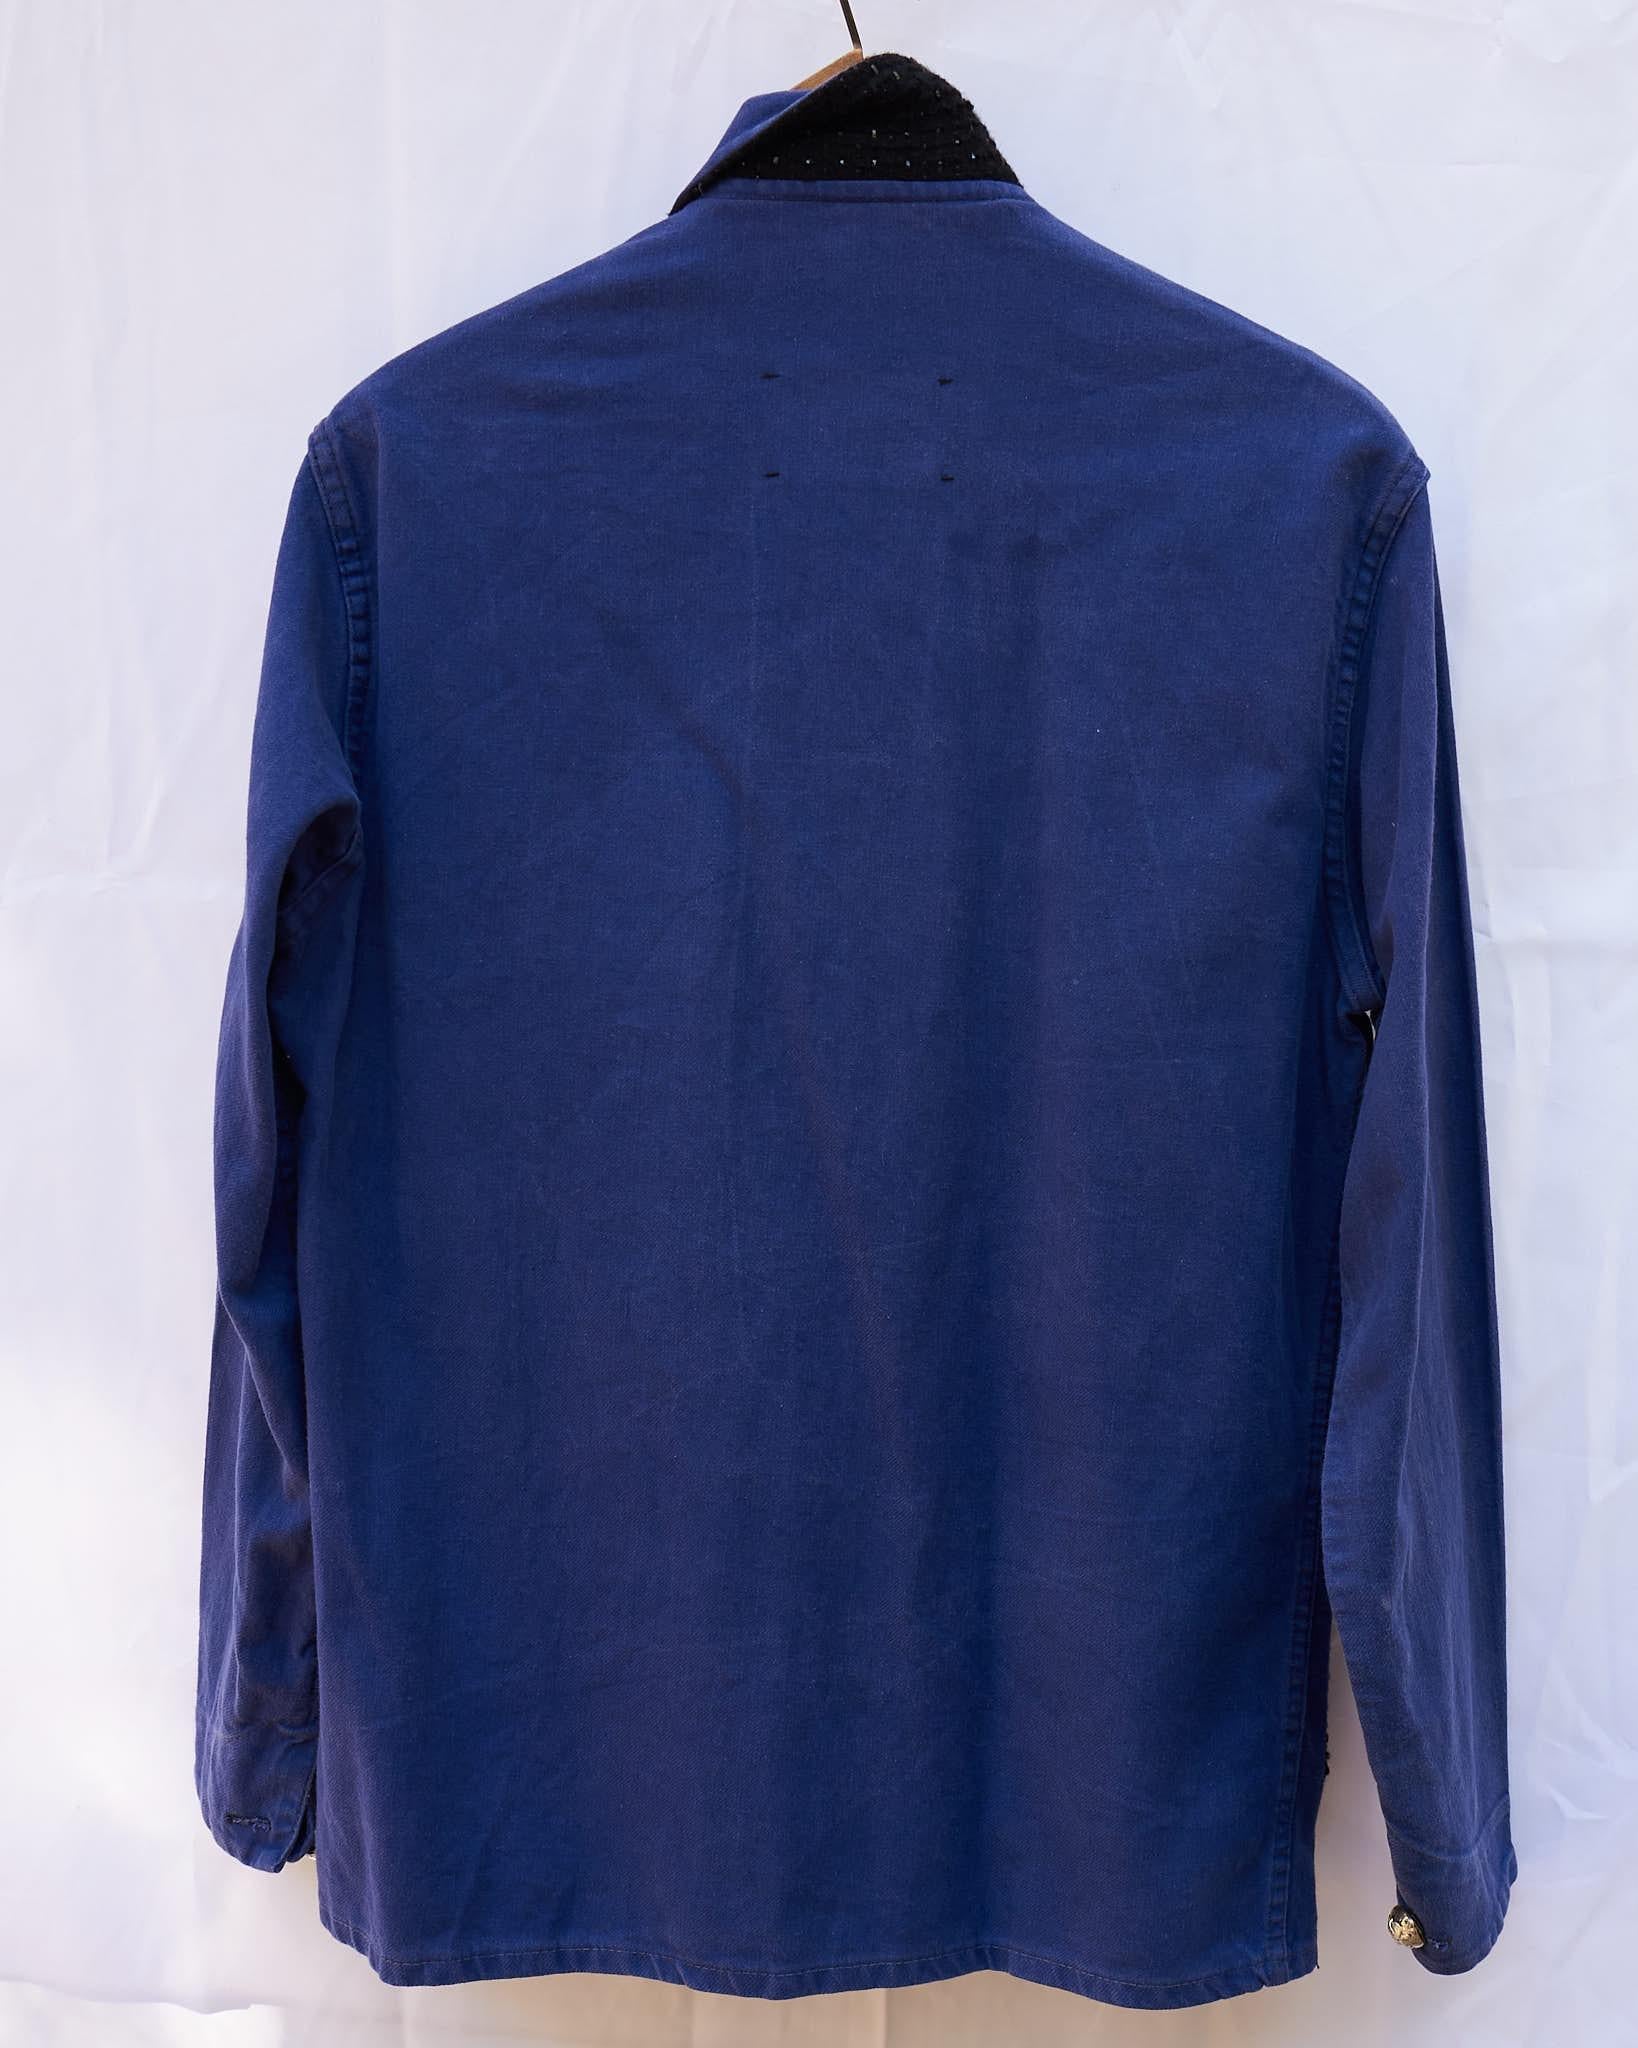 Designer Collectible Vintage Jacket Embellished French Work Blue Tweed J Dauphin 1